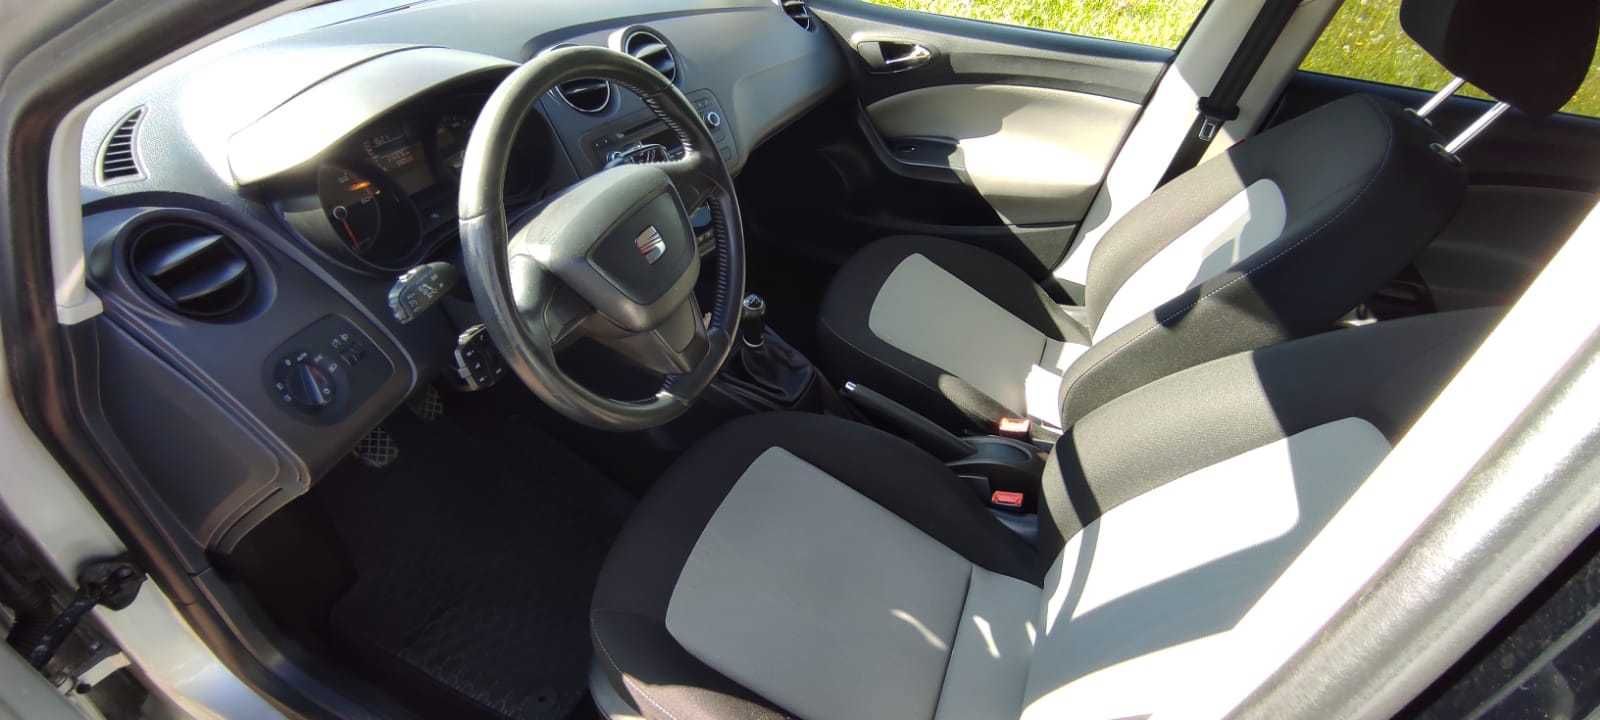 Seat Ibiza 1,6 2013r